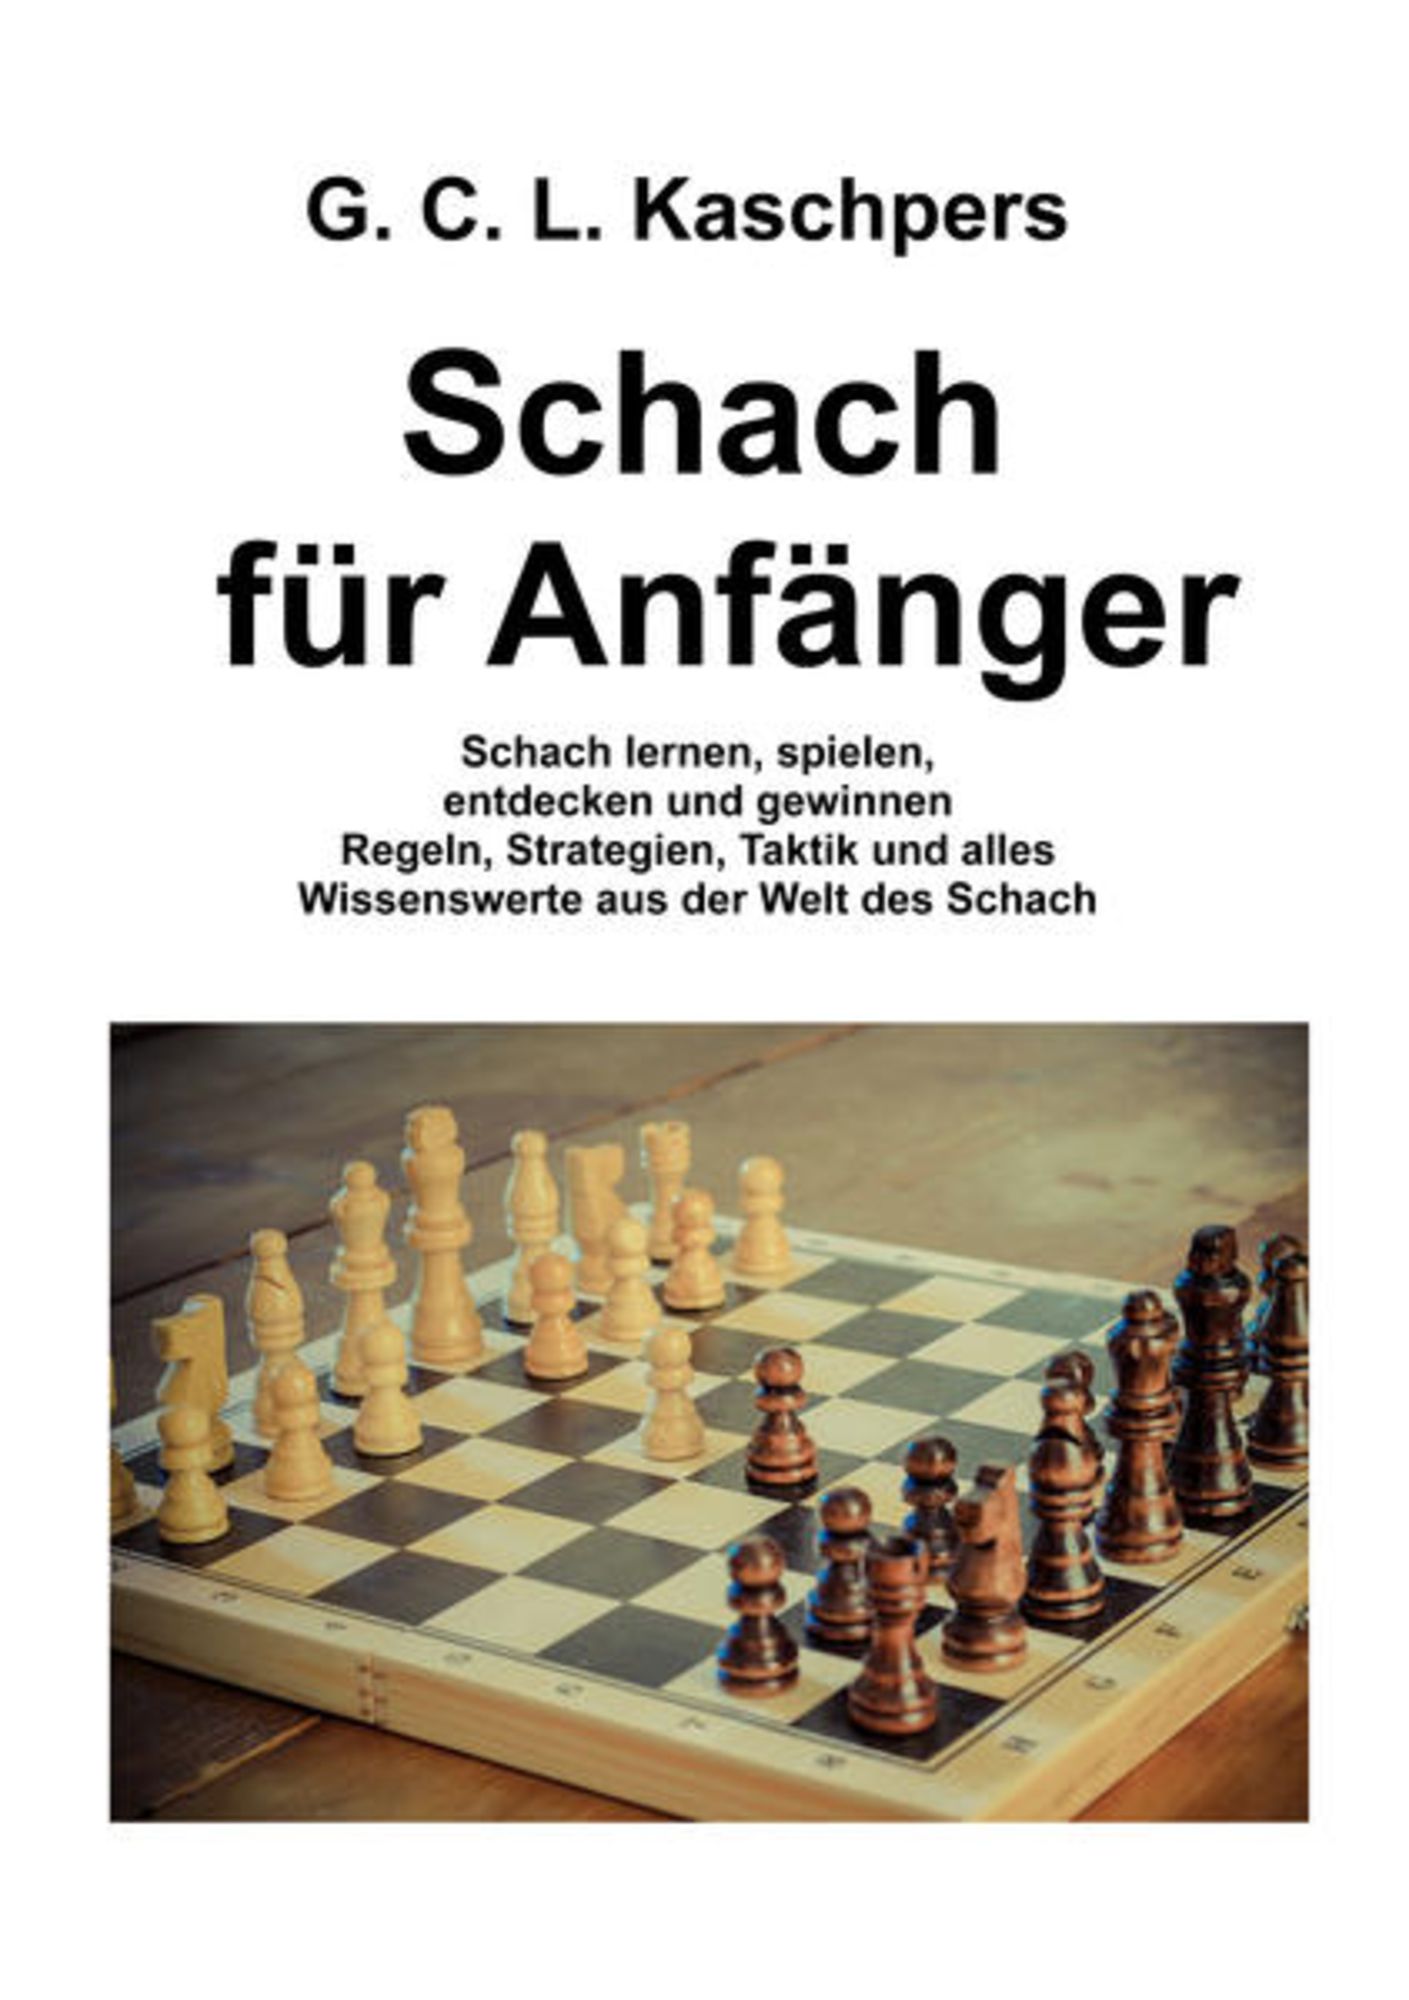 Schach für Anfänger von Georg Christian Ludwig Kaschpers - Buch